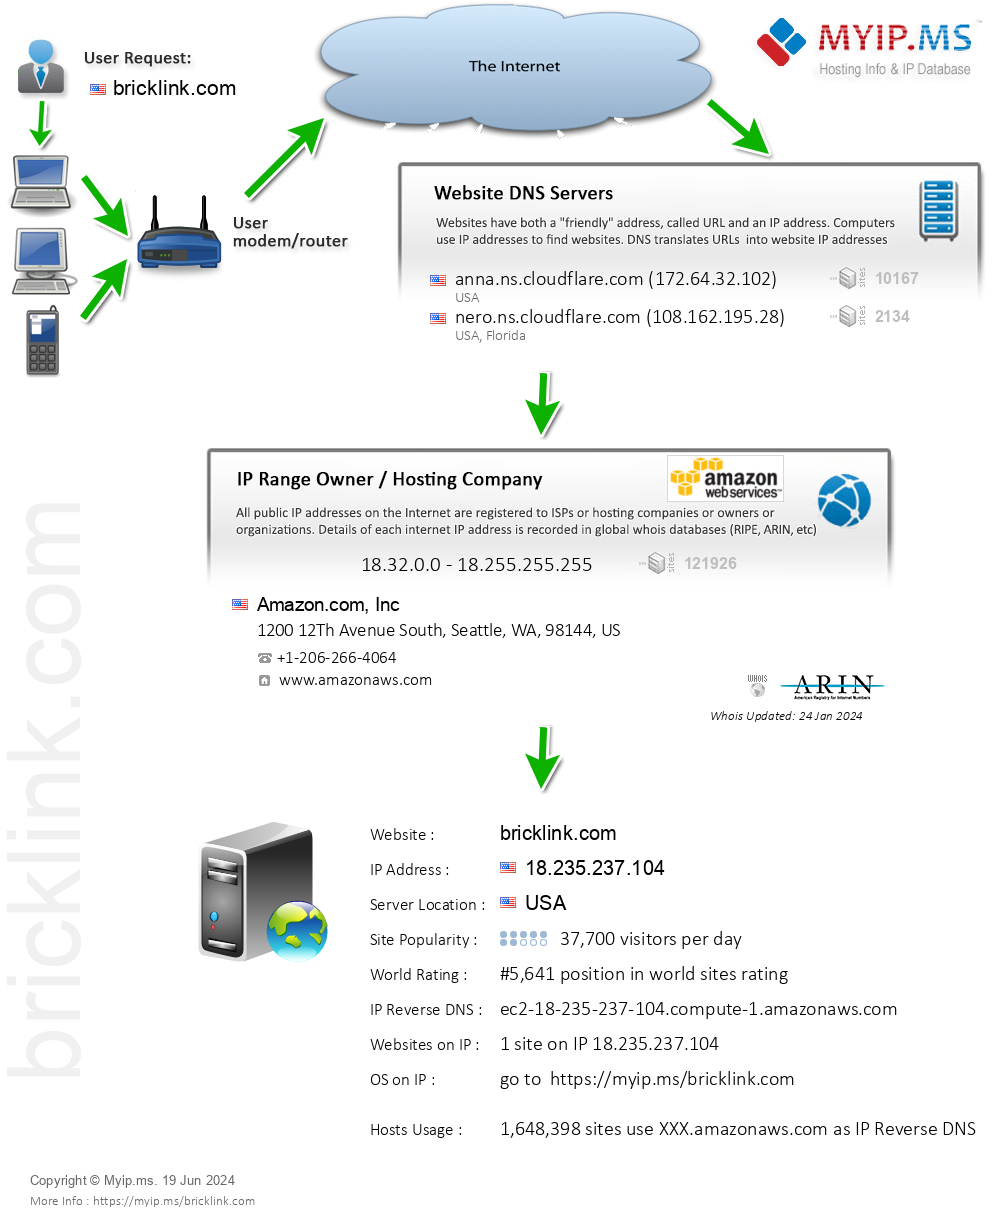 Bricklink.com - Website Hosting Visual IP Diagram